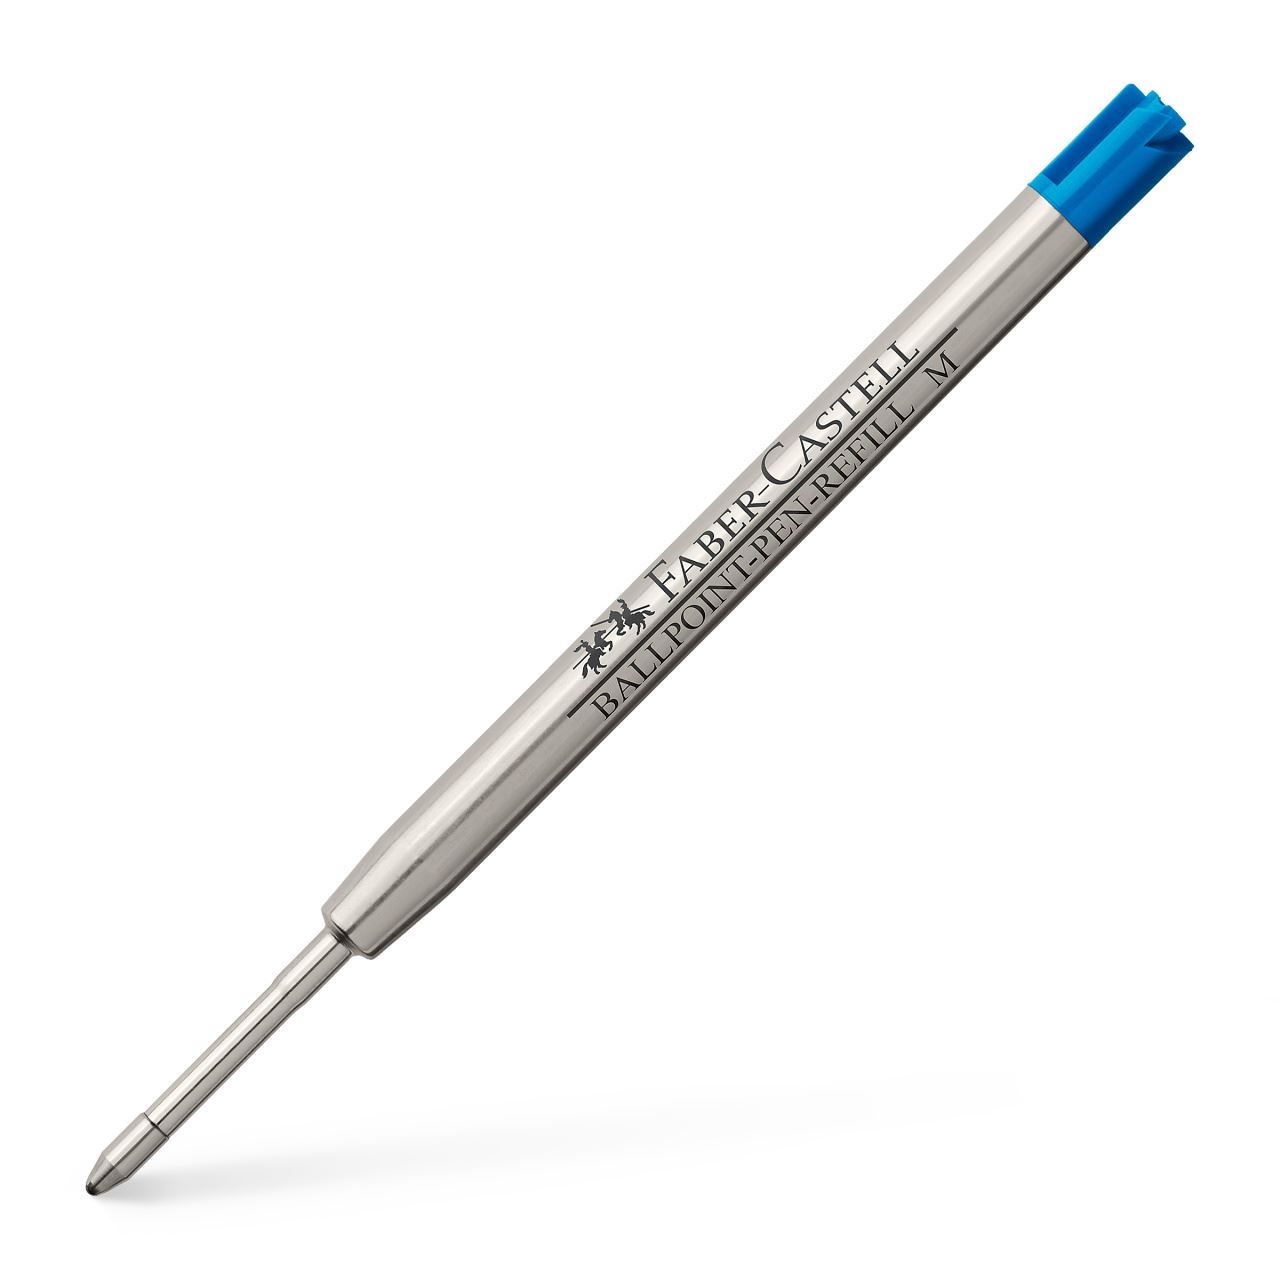 Faber-Castell - Ersatzmine Kugelschreiber, Großraummine M, blau